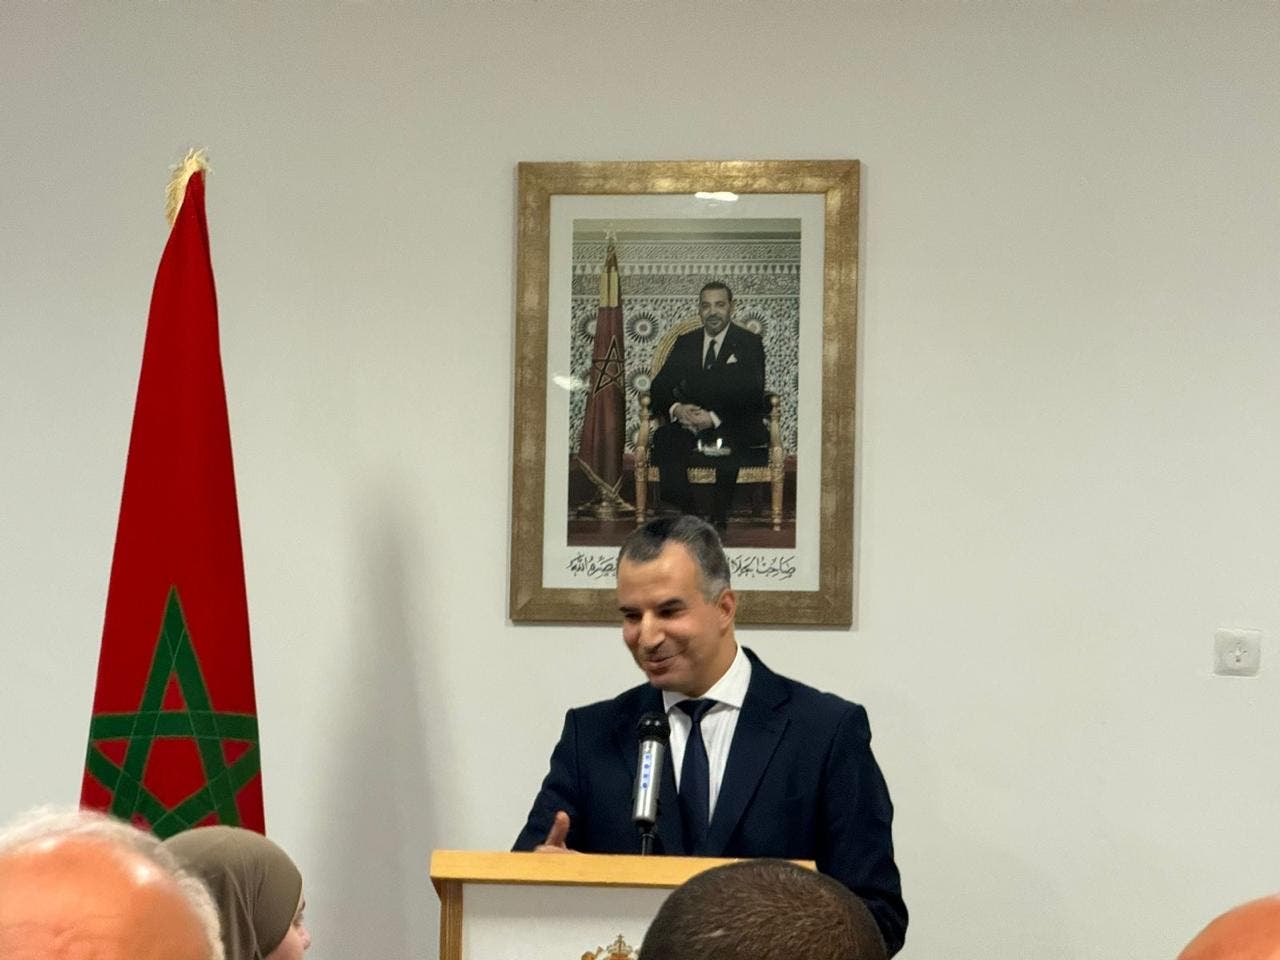 Le Consulat du Maroc à Rotterdam organise des portes ouvertes pour simplifier les démarches pour les immigrés marocains